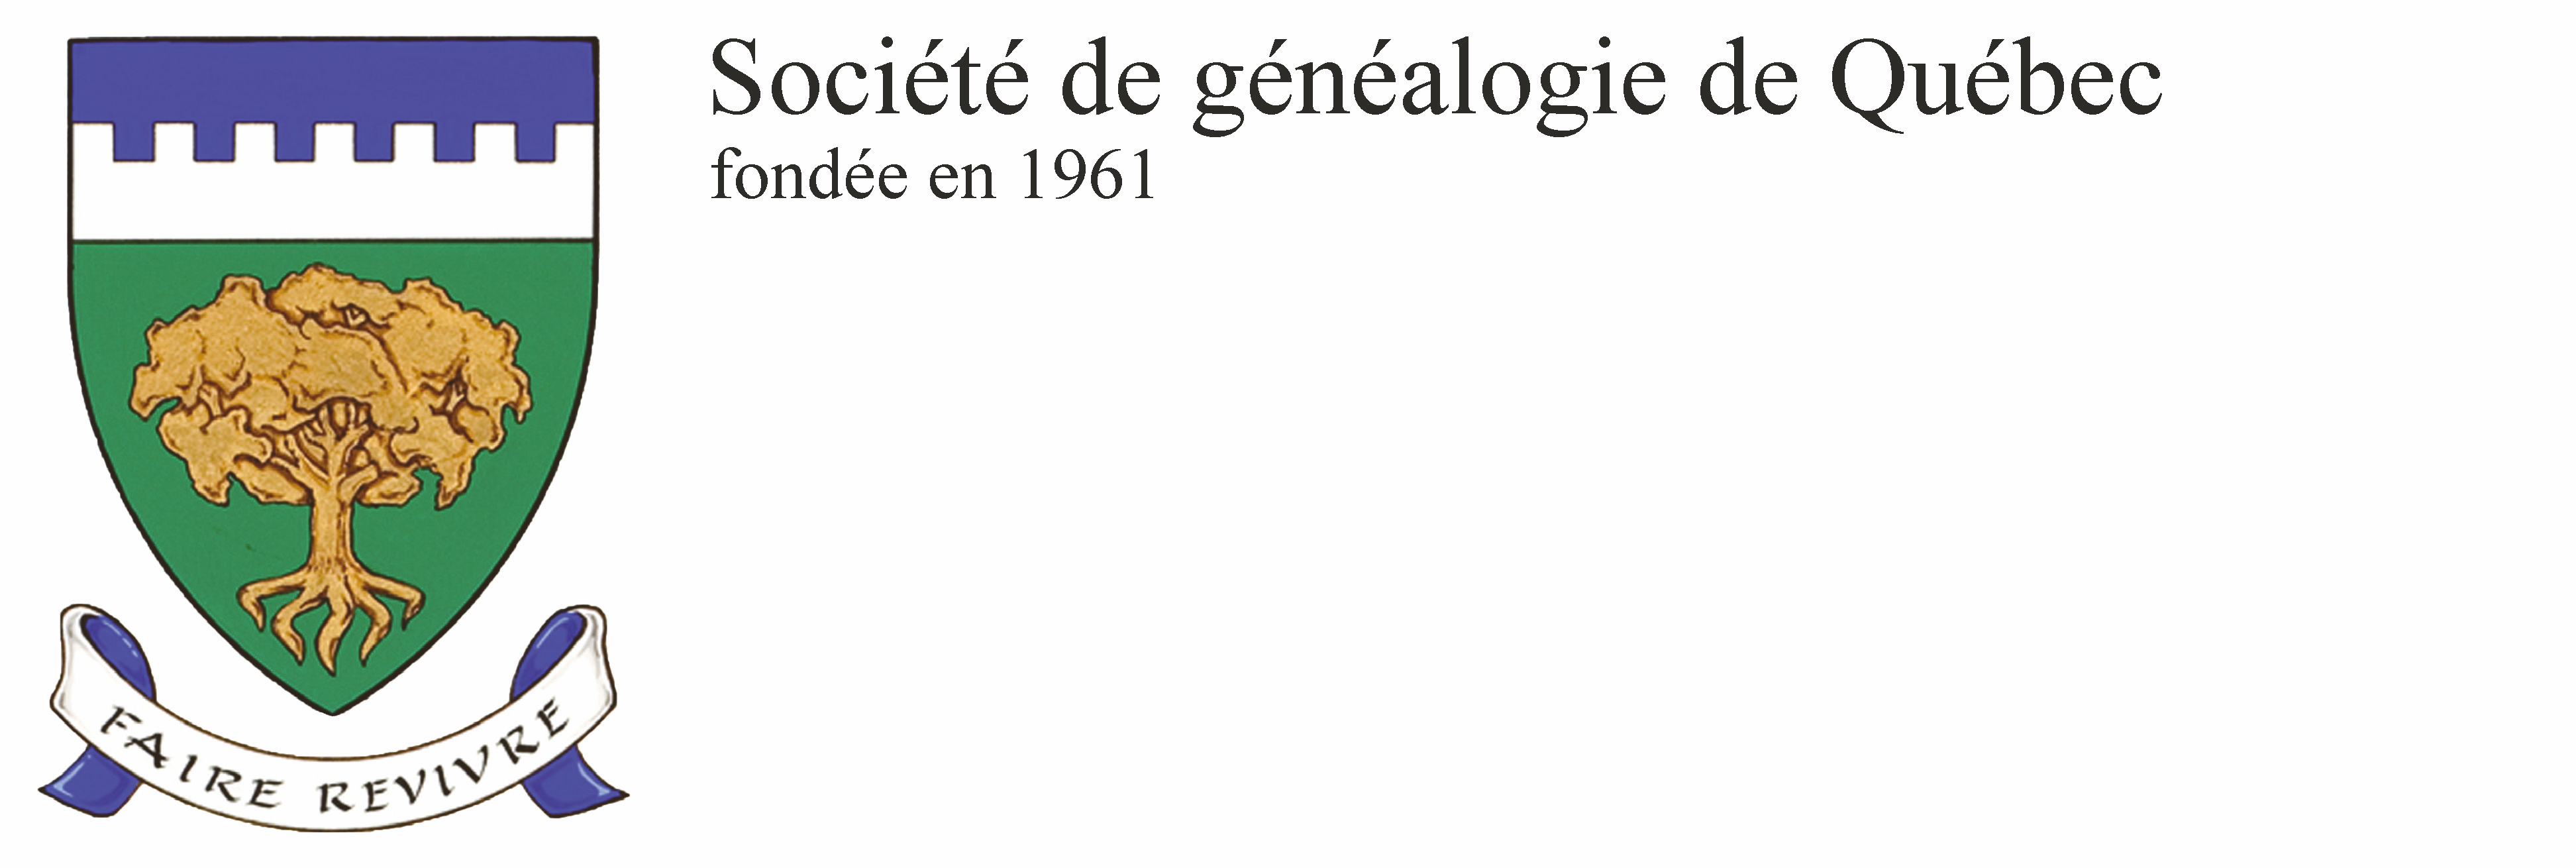 Société de généalogie de Québec